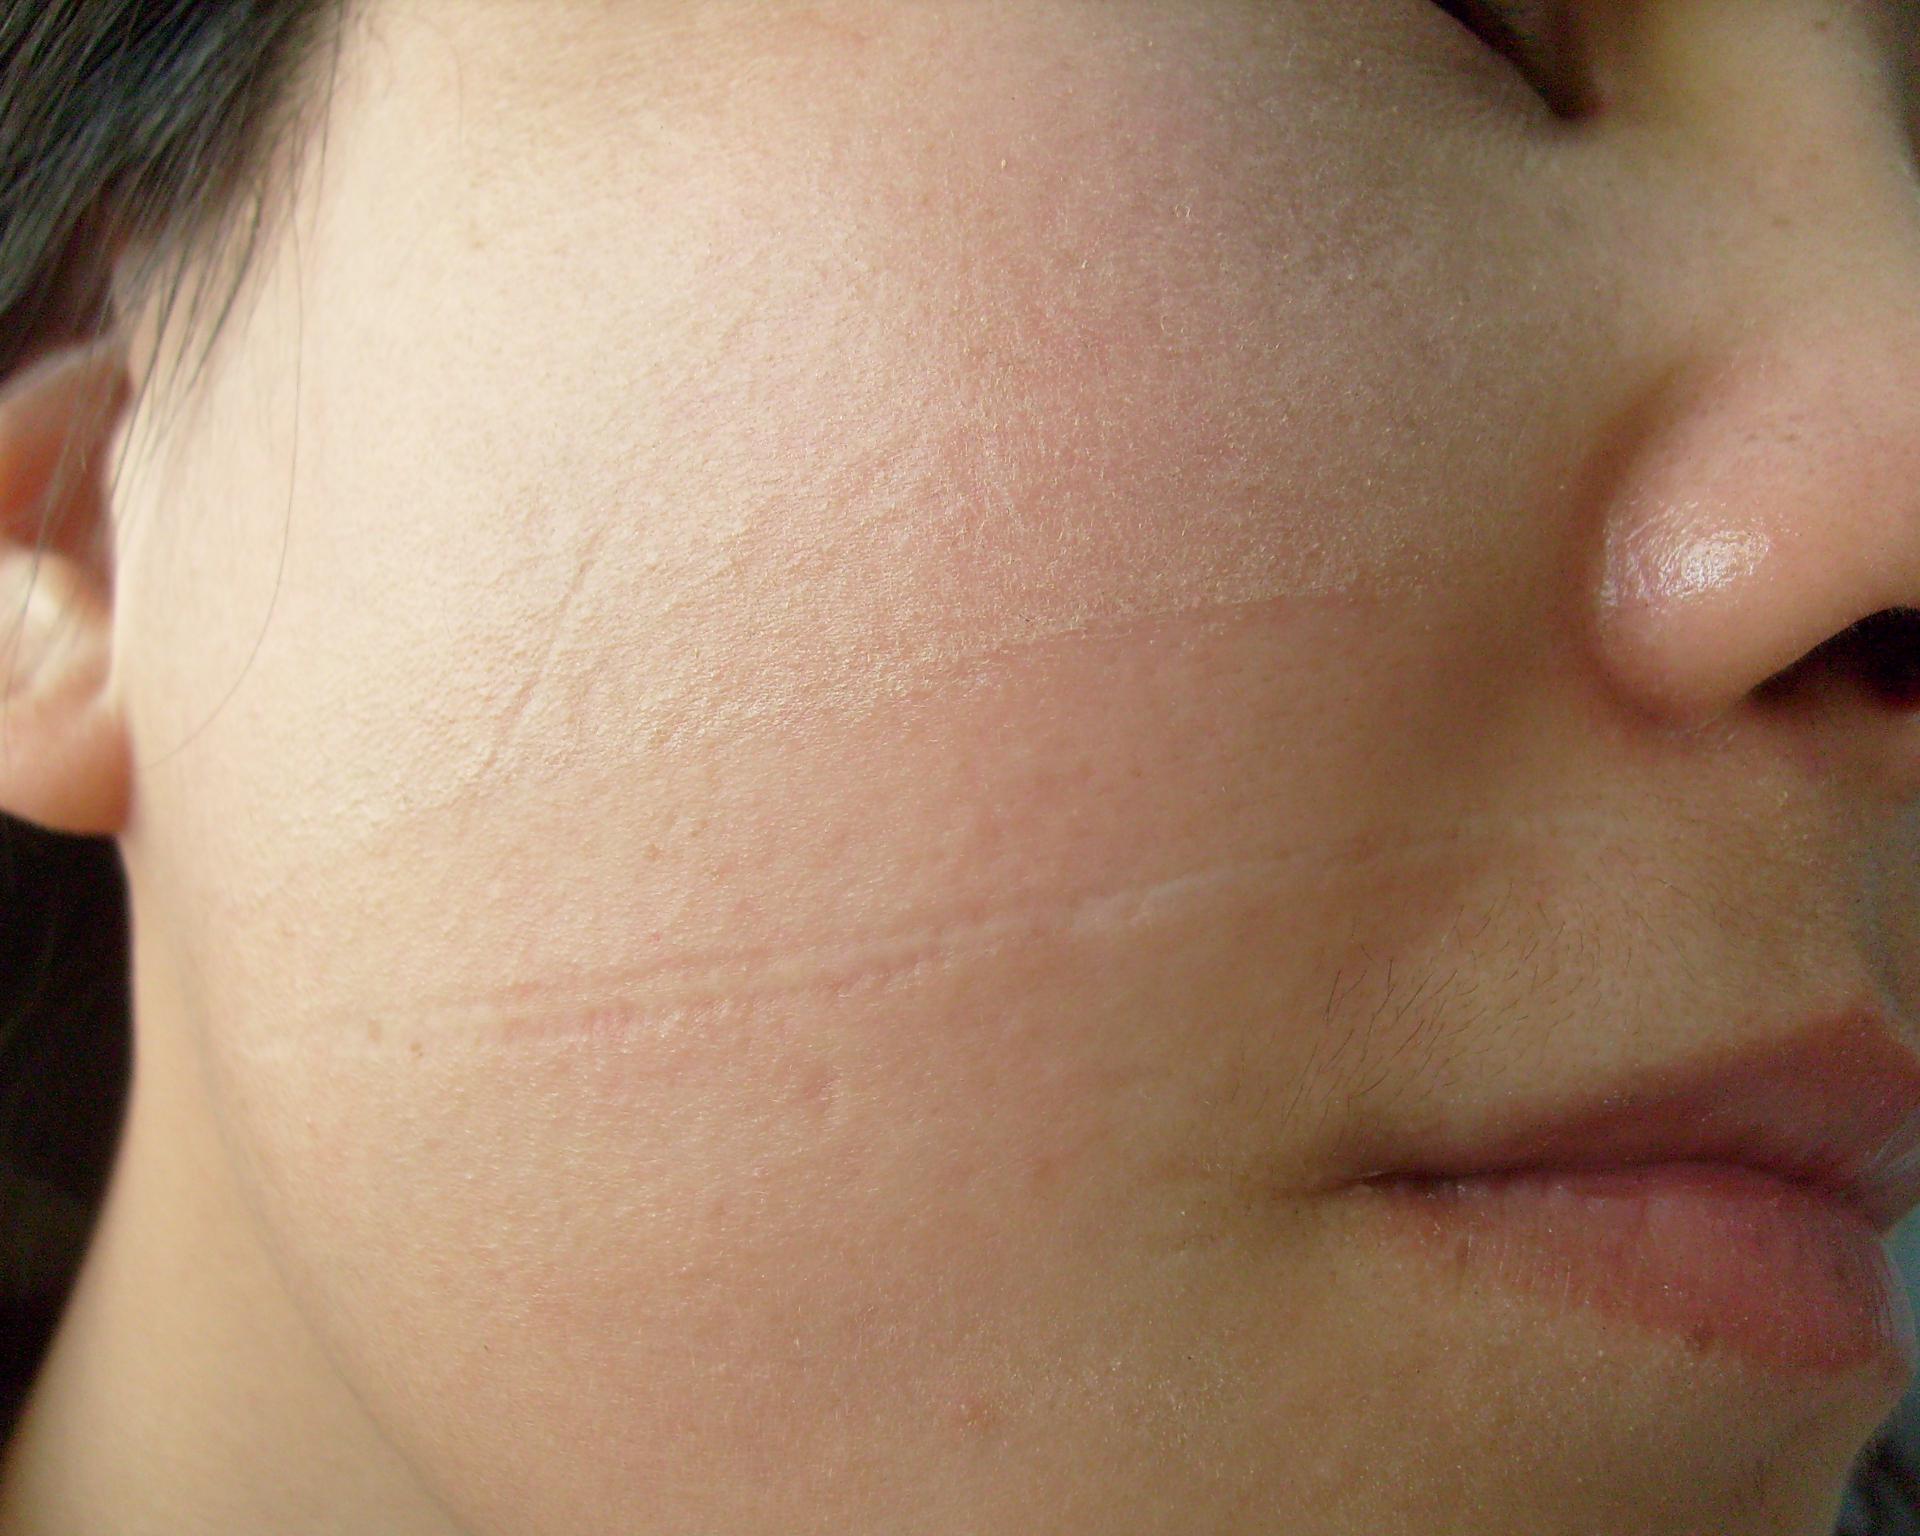 脸颊小时候利器划伤留下来的凹陷疤痕能修复吗?